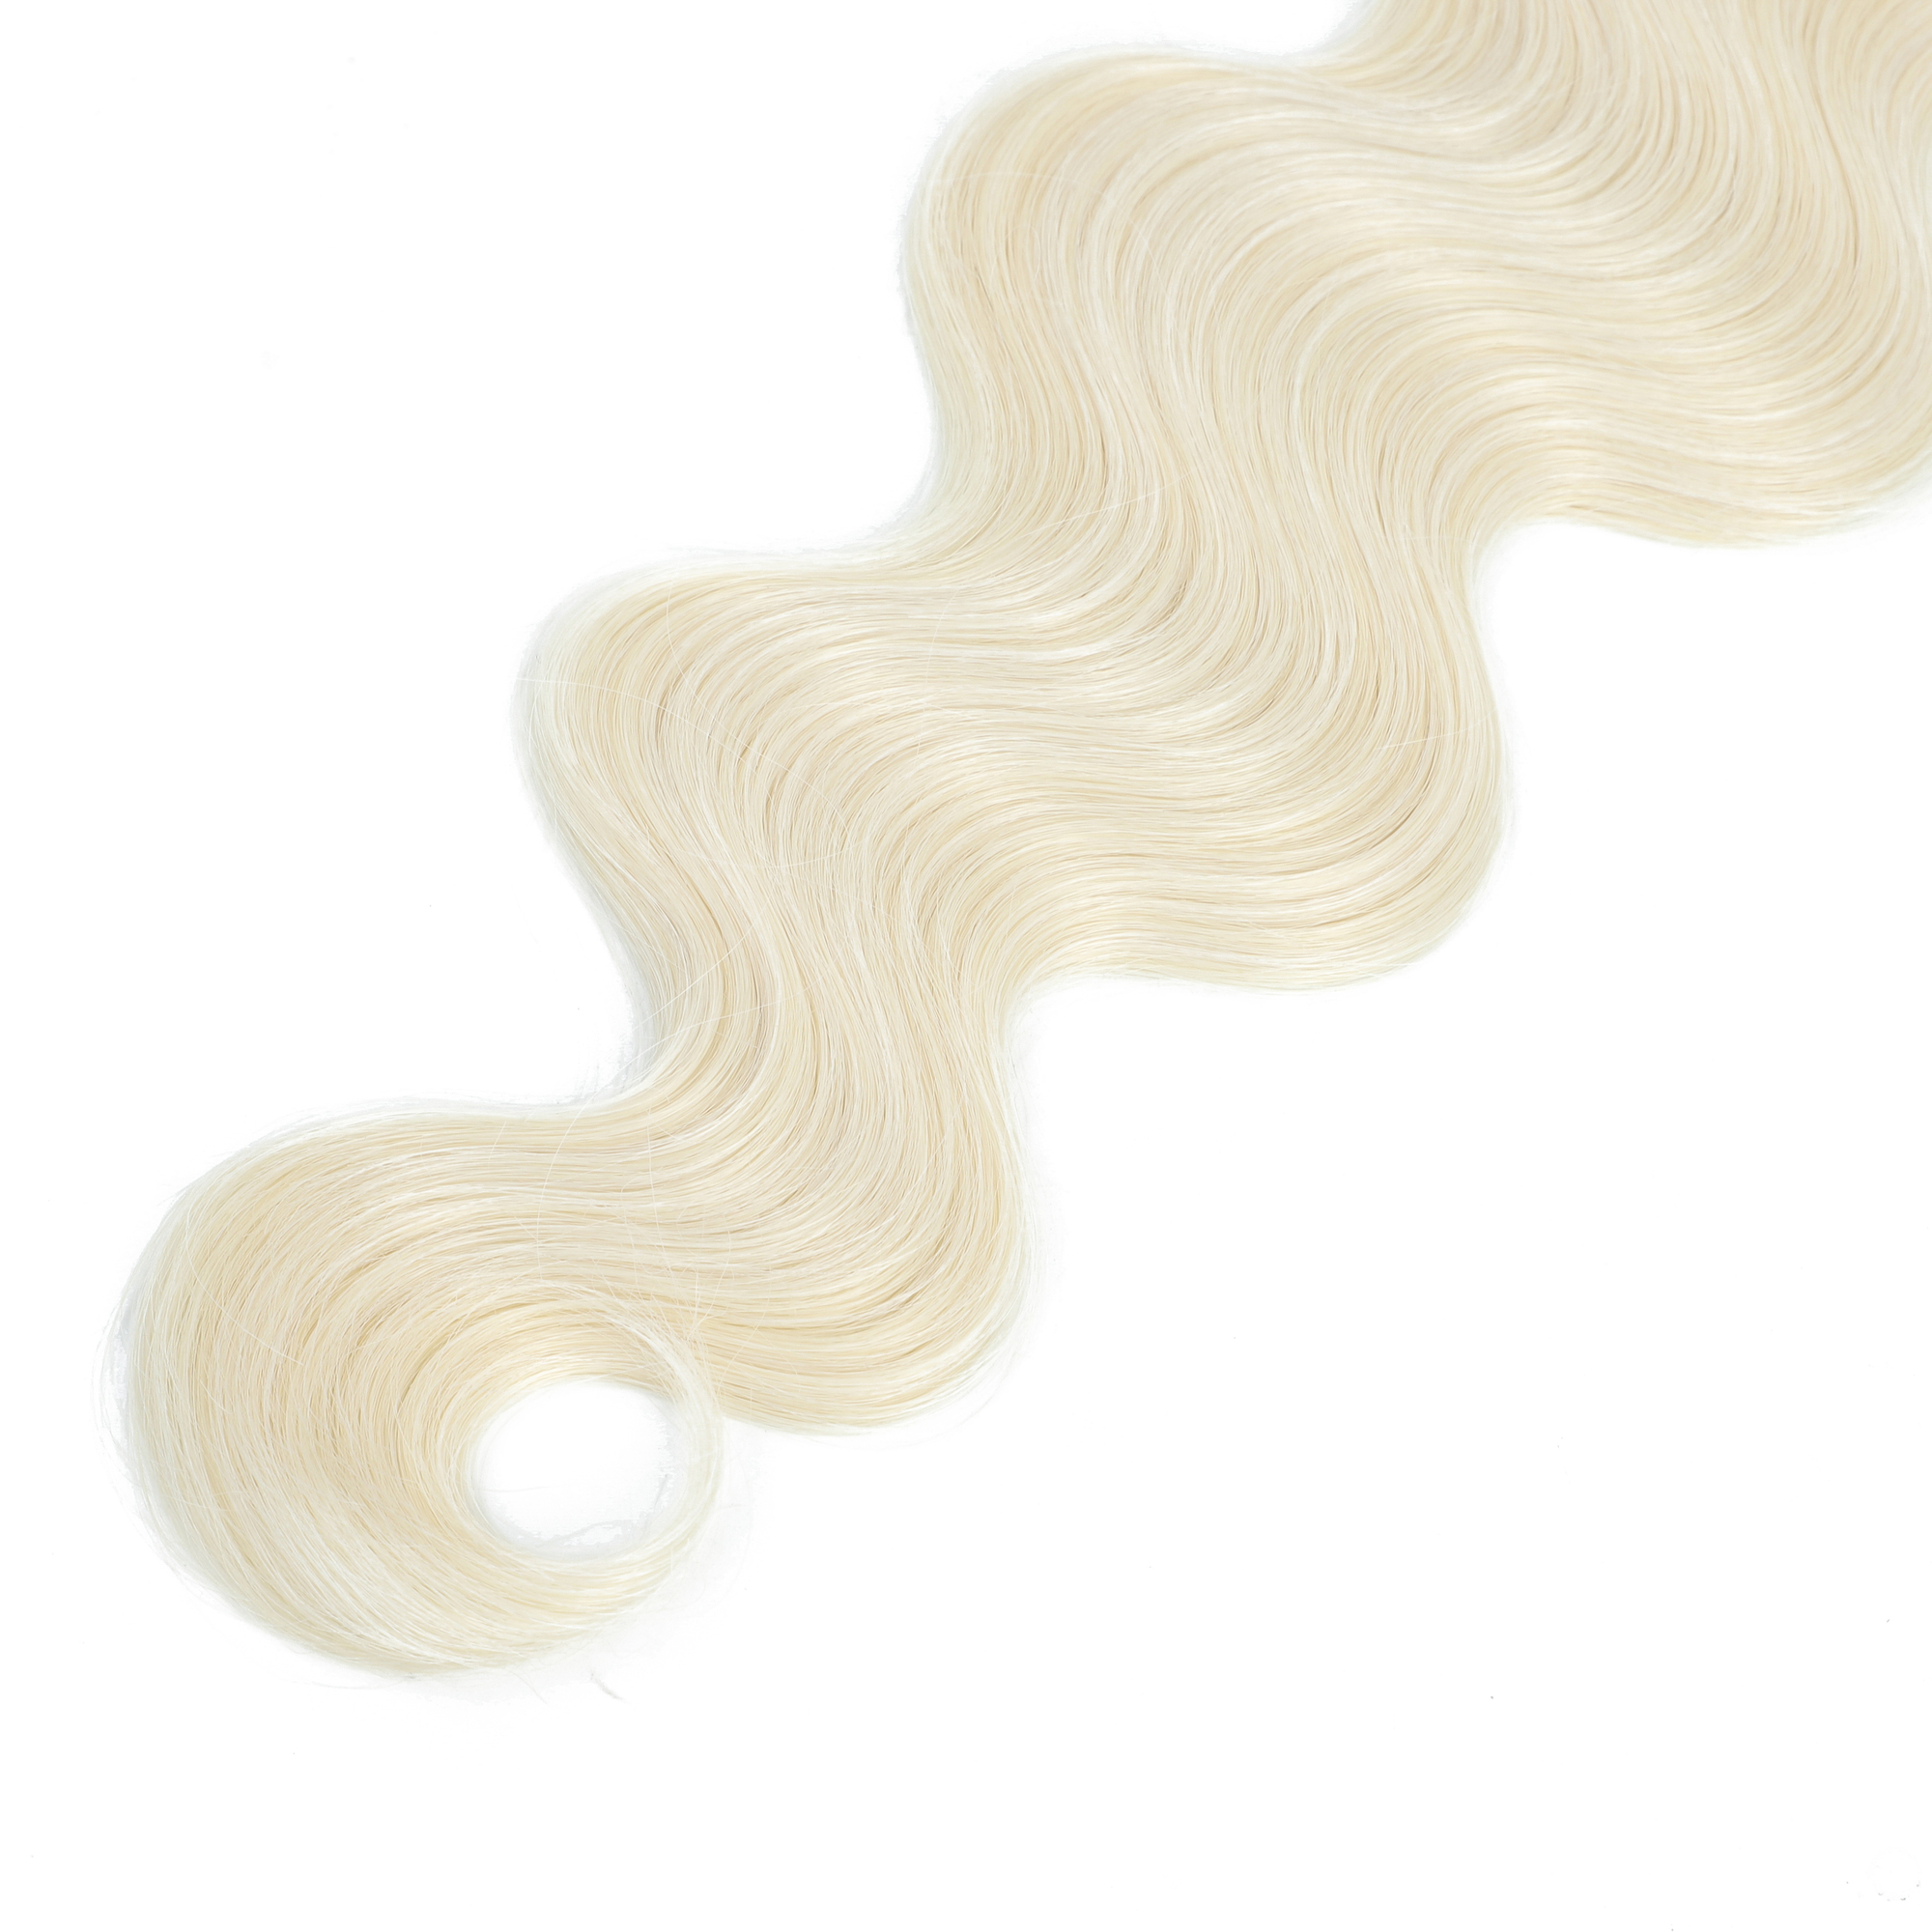 Hårstycken vita kroppsvågbuntar syntetiska naturliga väv färg 4 brun piano blond rosa lila blå förlängningar 2210117497767